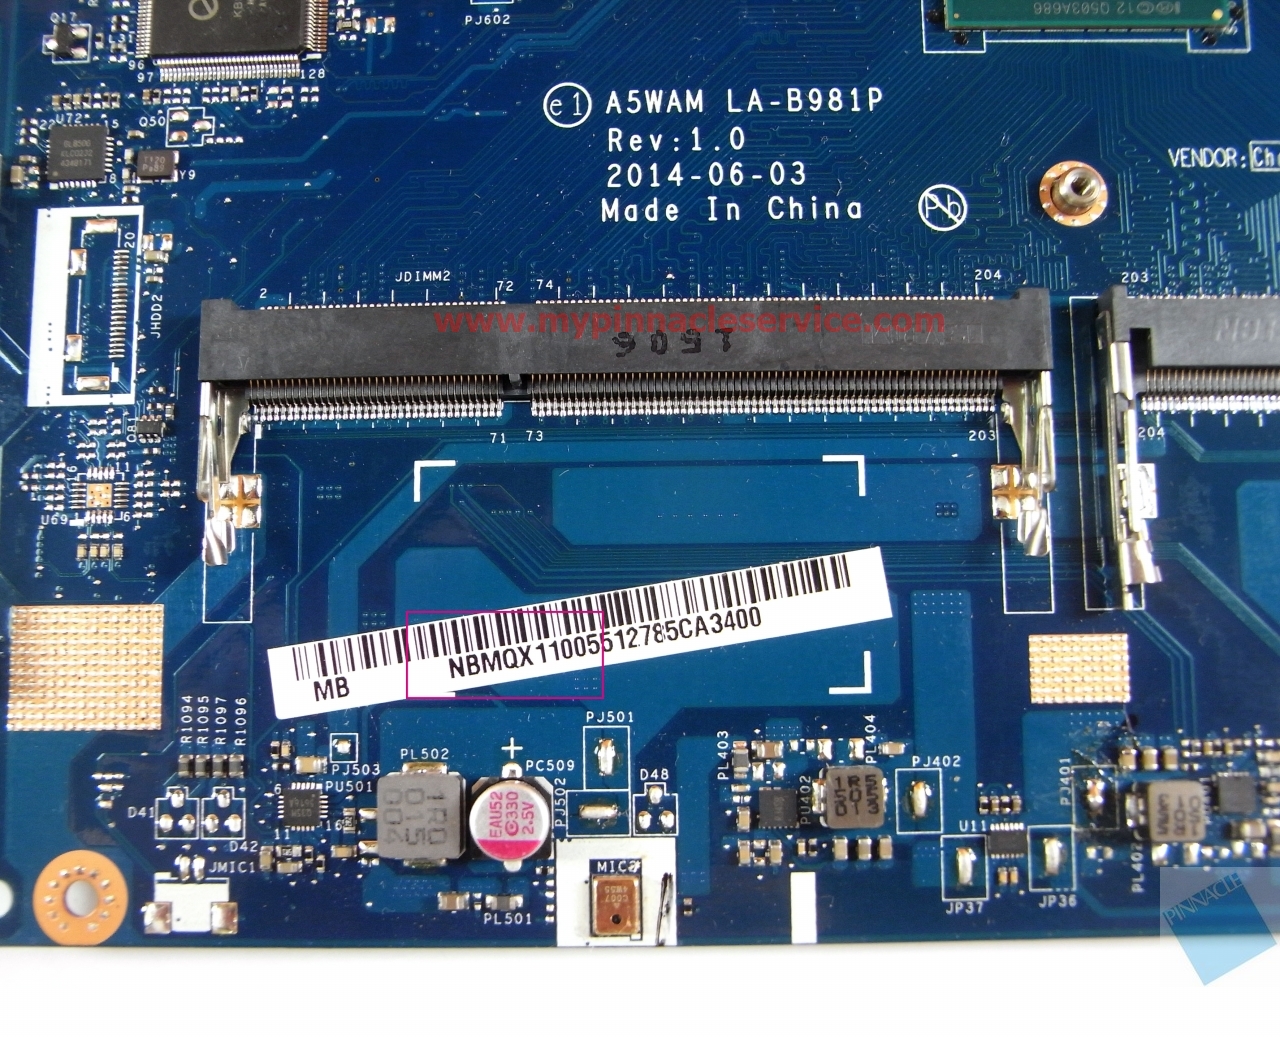 Acer Aspire E5-511G A5WAM LA-B981P N2920 Motherboard â€?NBMQX11005